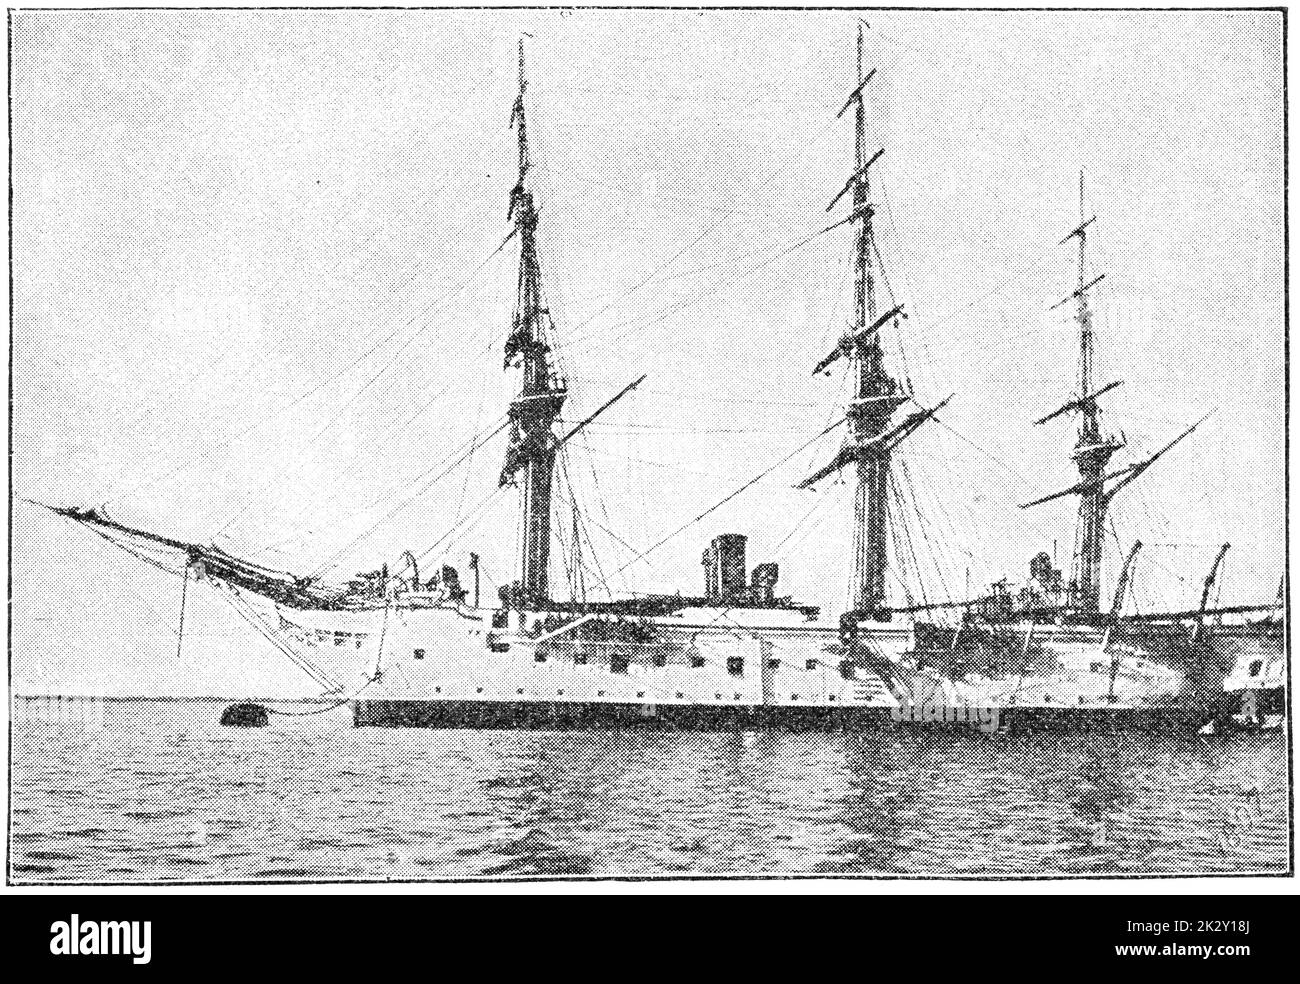 SMS Nixe (1879) - eine Dampfkorvette, die für die Kaiserliche Marine gebaut wurde. Illustration des 19. Jahrhunderts. Deutschland. Weißer Hintergrund. Stockfoto